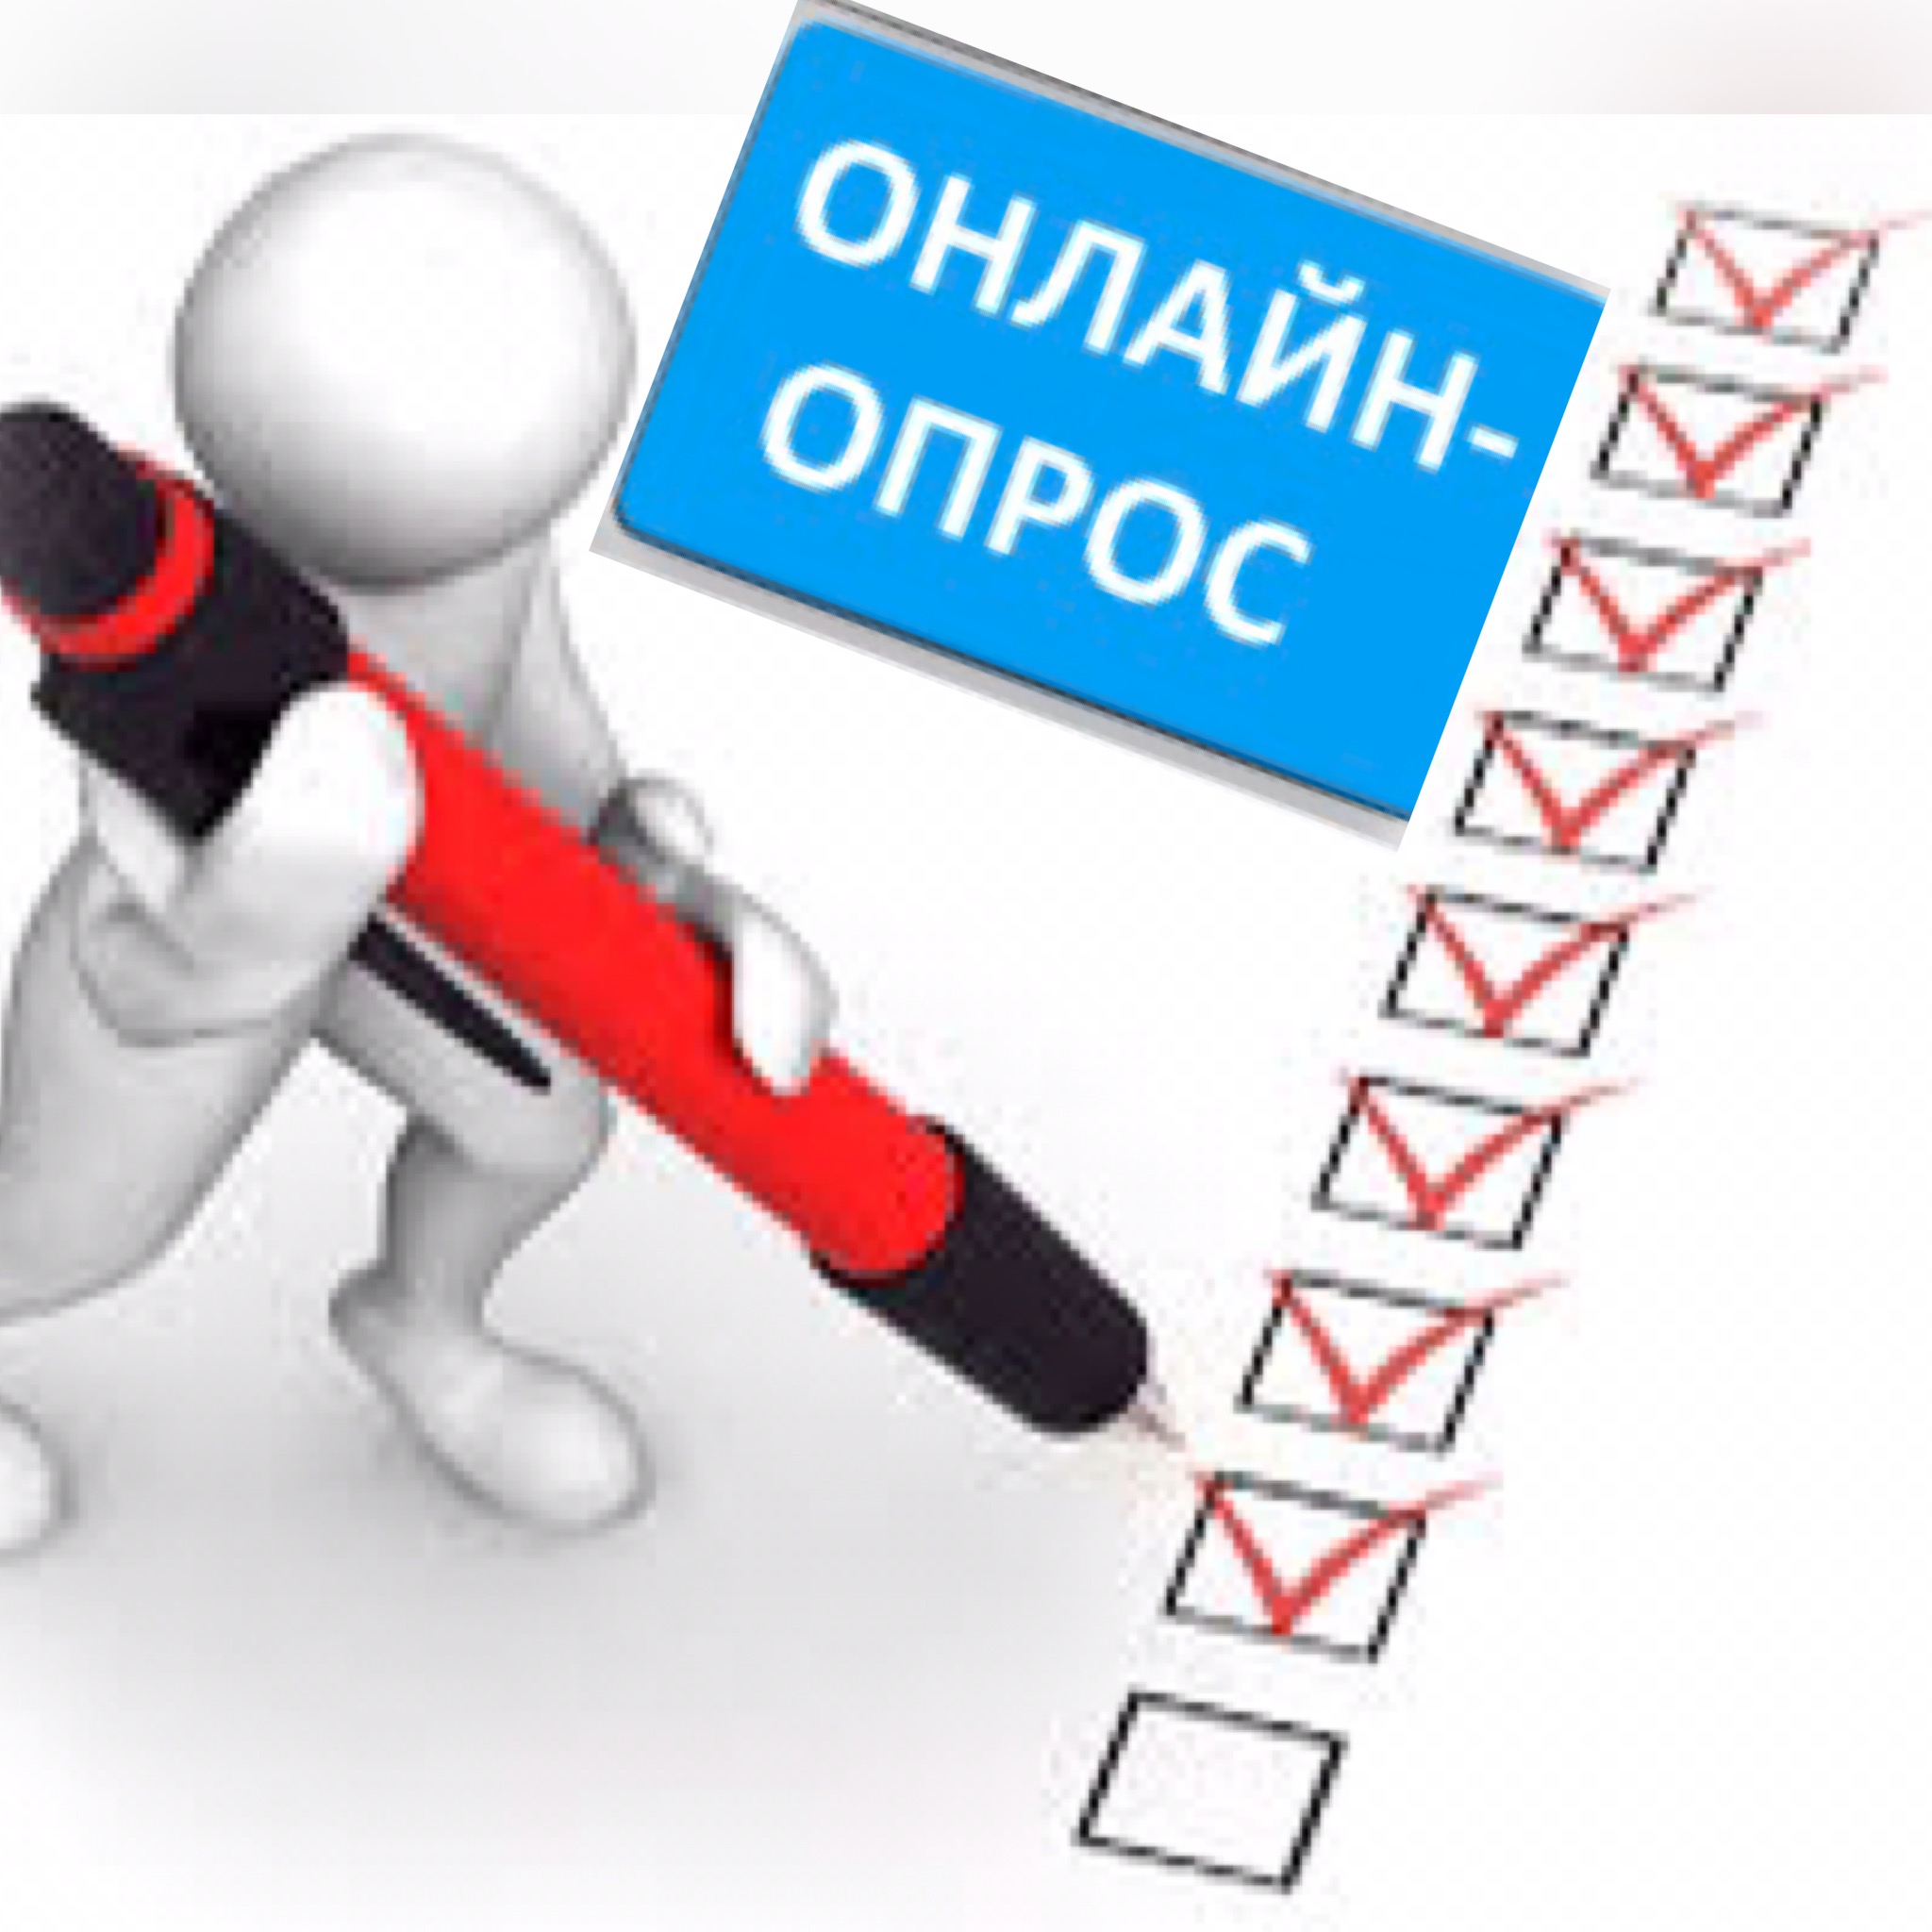 Ассоциация «СРО «СредВолгСтрой» проводит опрос организаций-членов Ассоциации о режиме работы в мае месяце